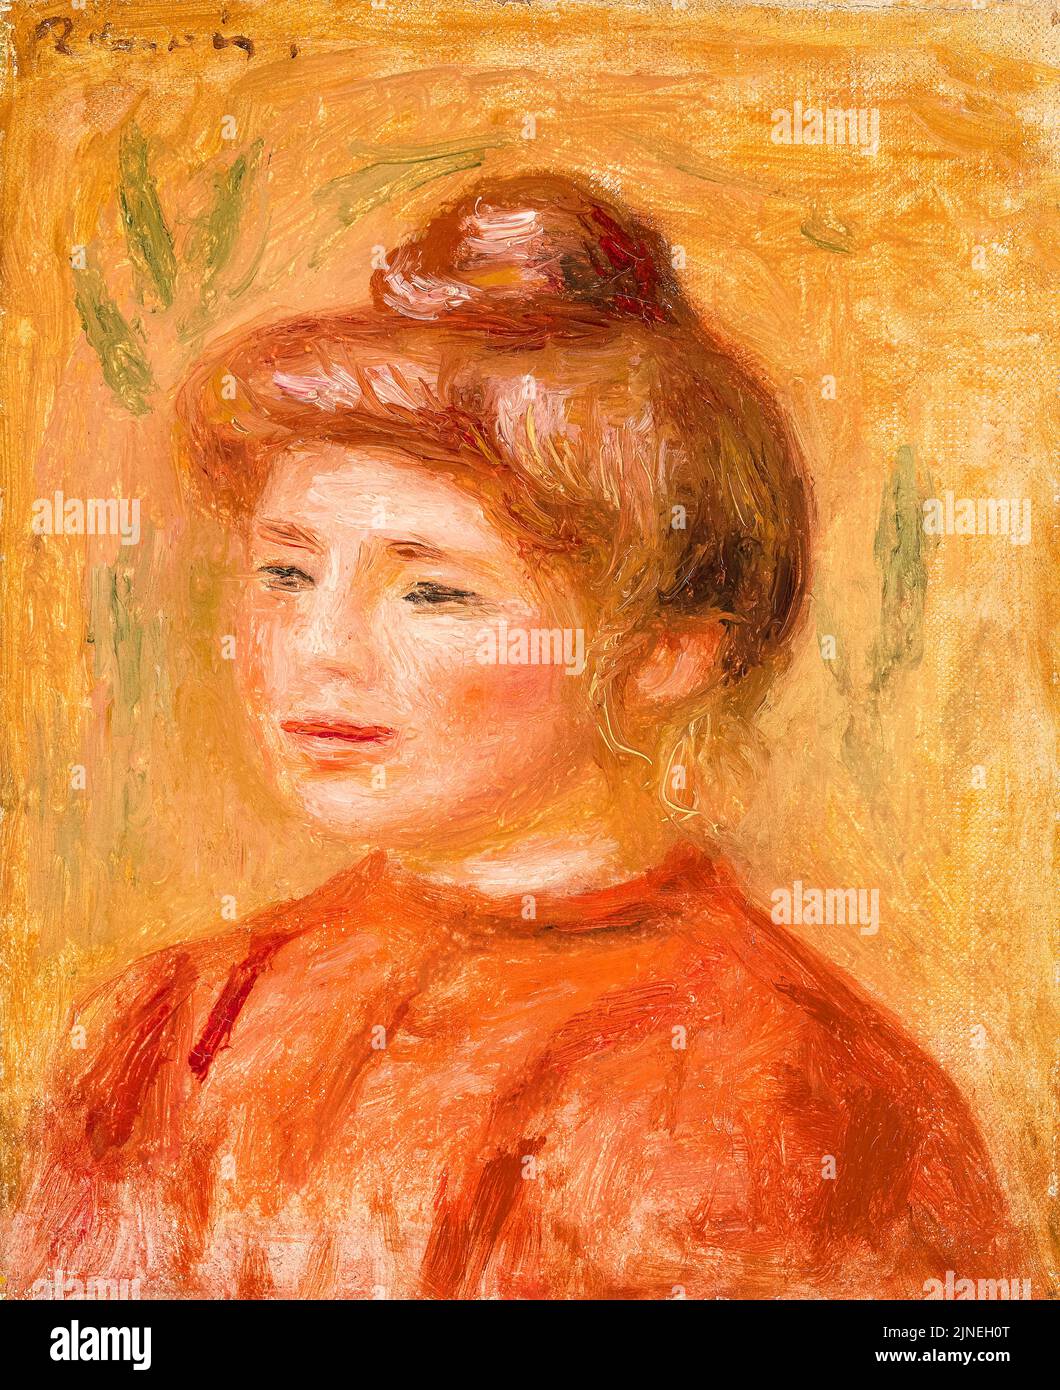 Pierre Auguste Renoir, buste de femme en rouge, peinture à l'huile sur toile, 1905-1908 Banque D'Images